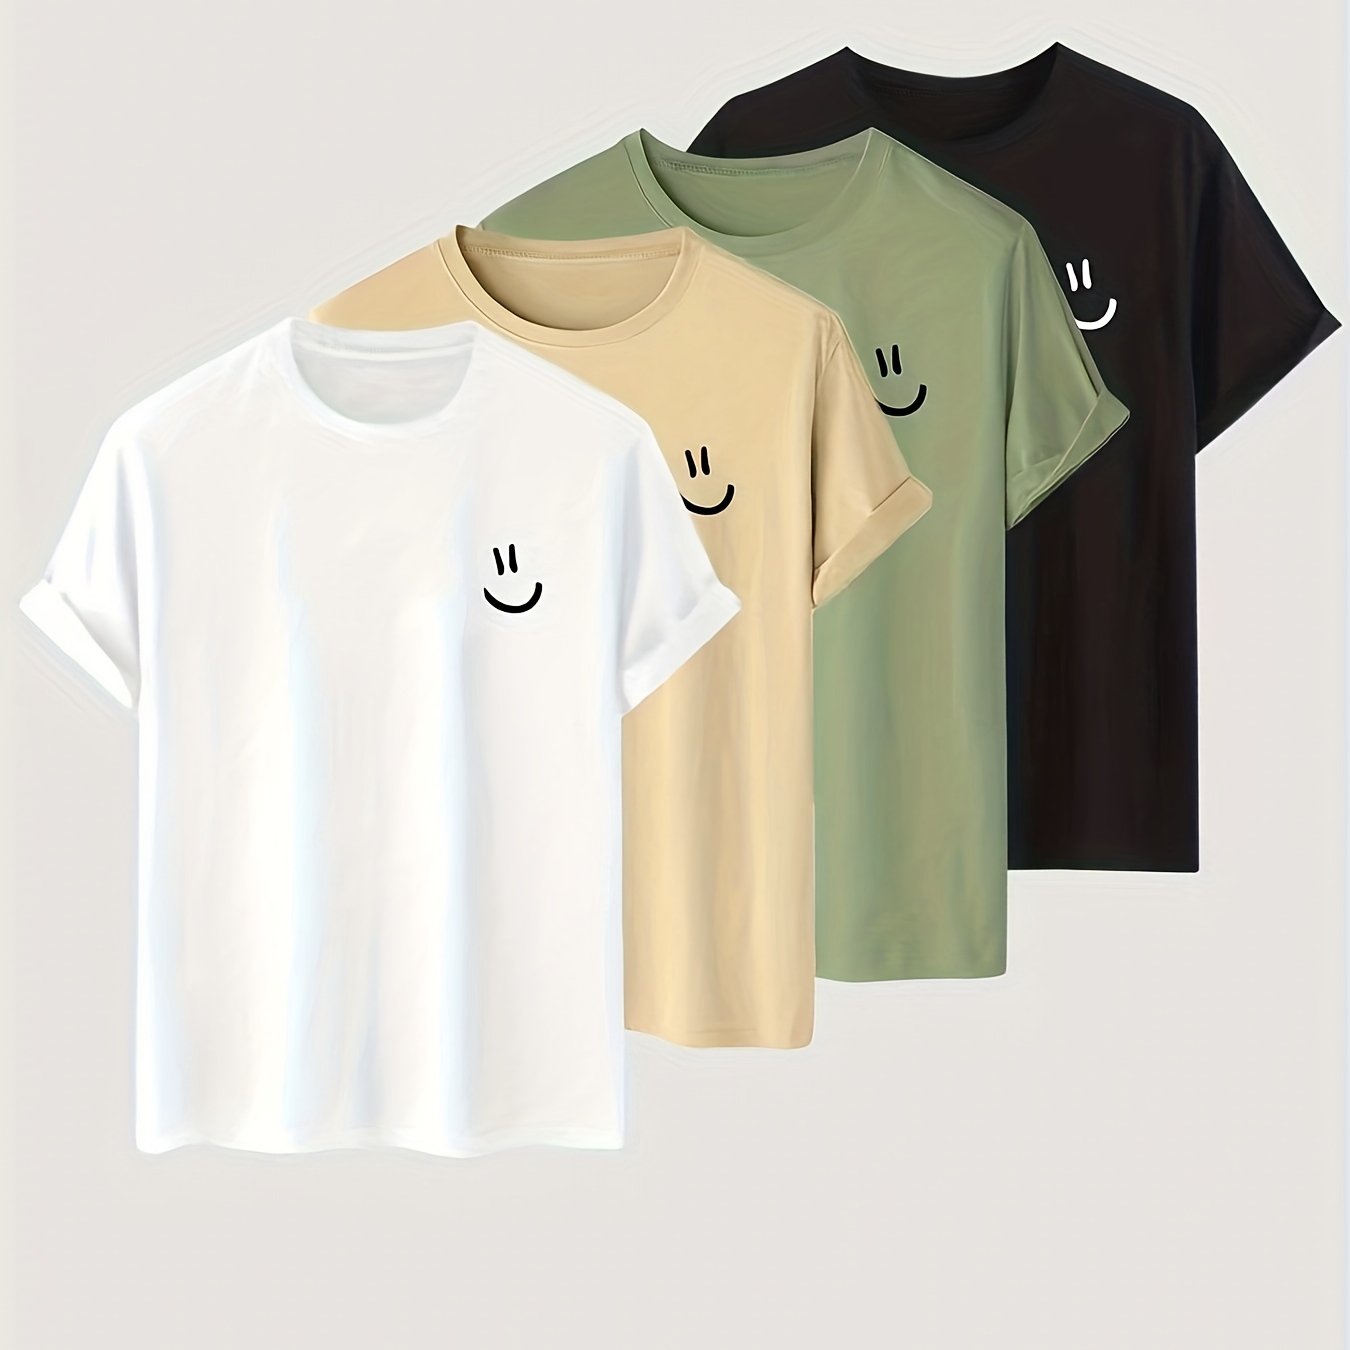 4er Set Smiley Shirt für Männer